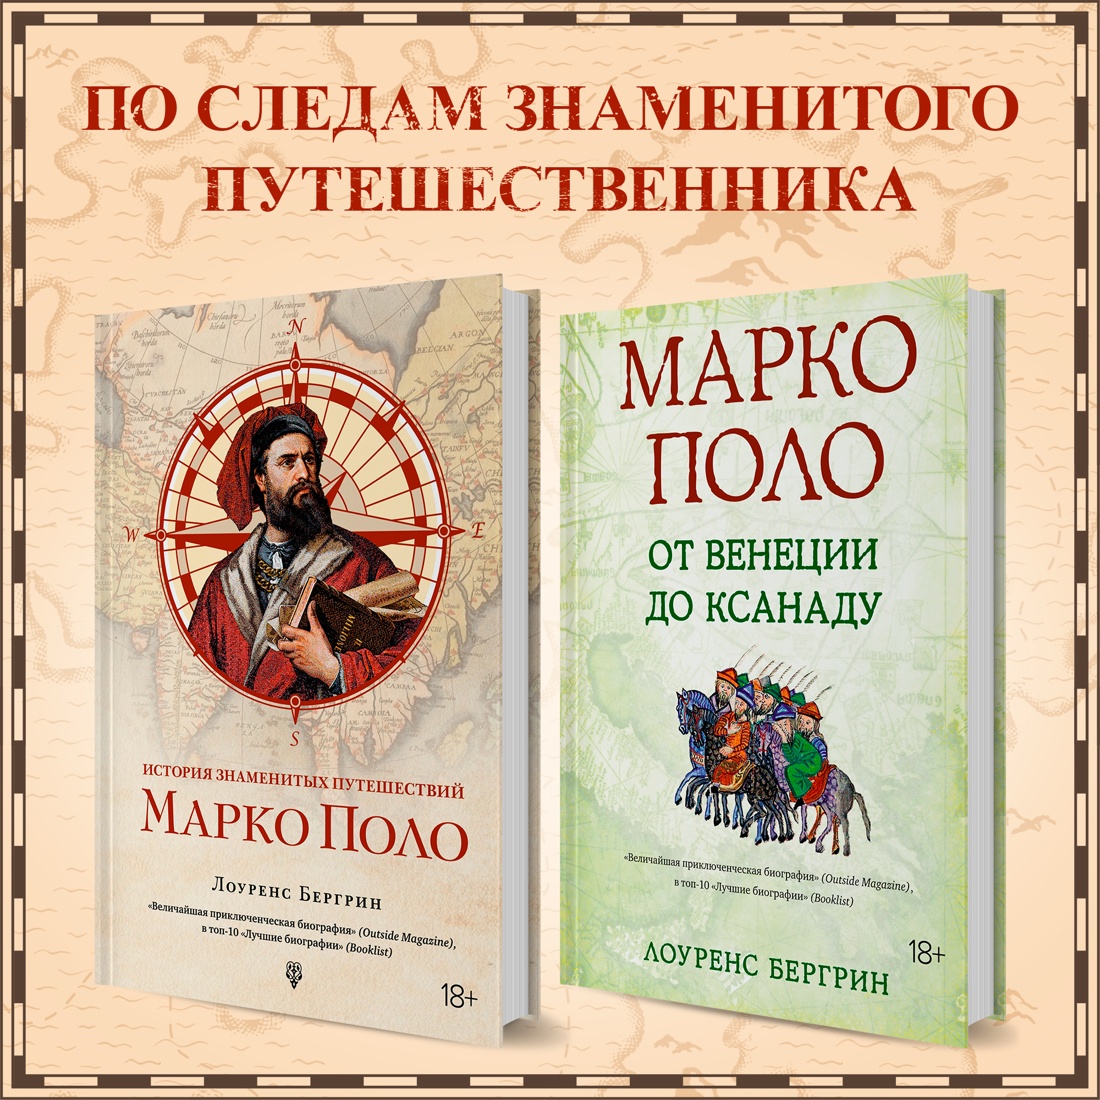 Промо материал к книге "История знаменитых путешествий: Марко Поло" №0